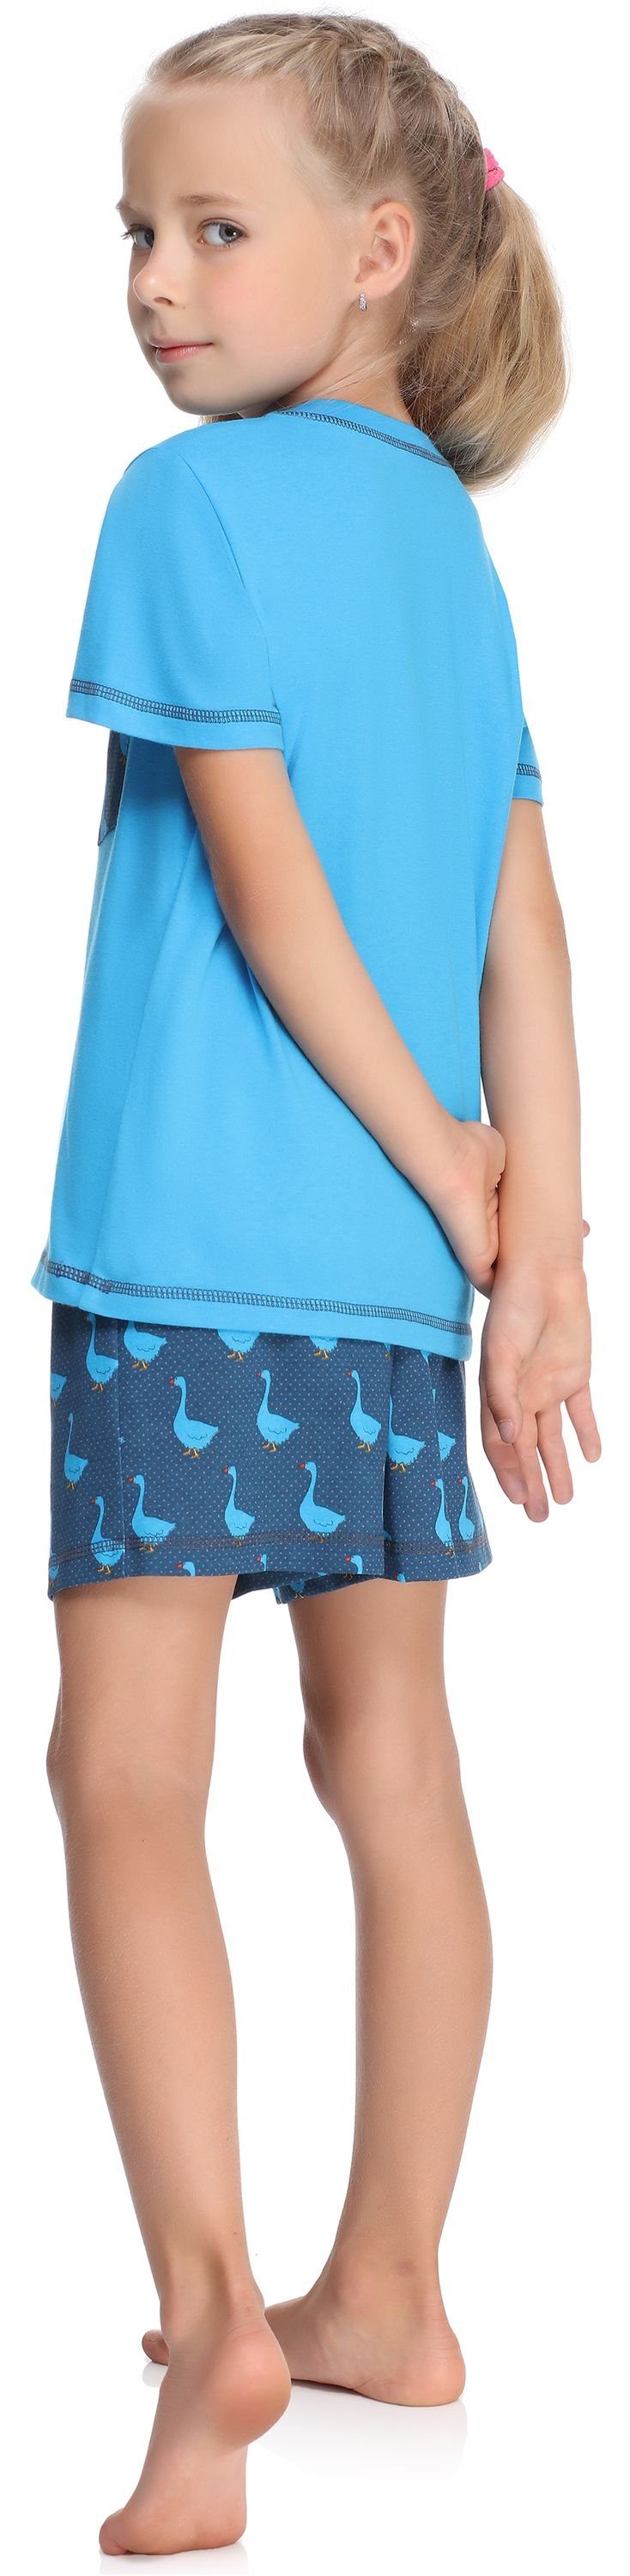 Merry Style Pyjama Blau/Gans Schlafanzug Mädchen Set Baumwolle Schlafanzüge Kurz aus MS10-292